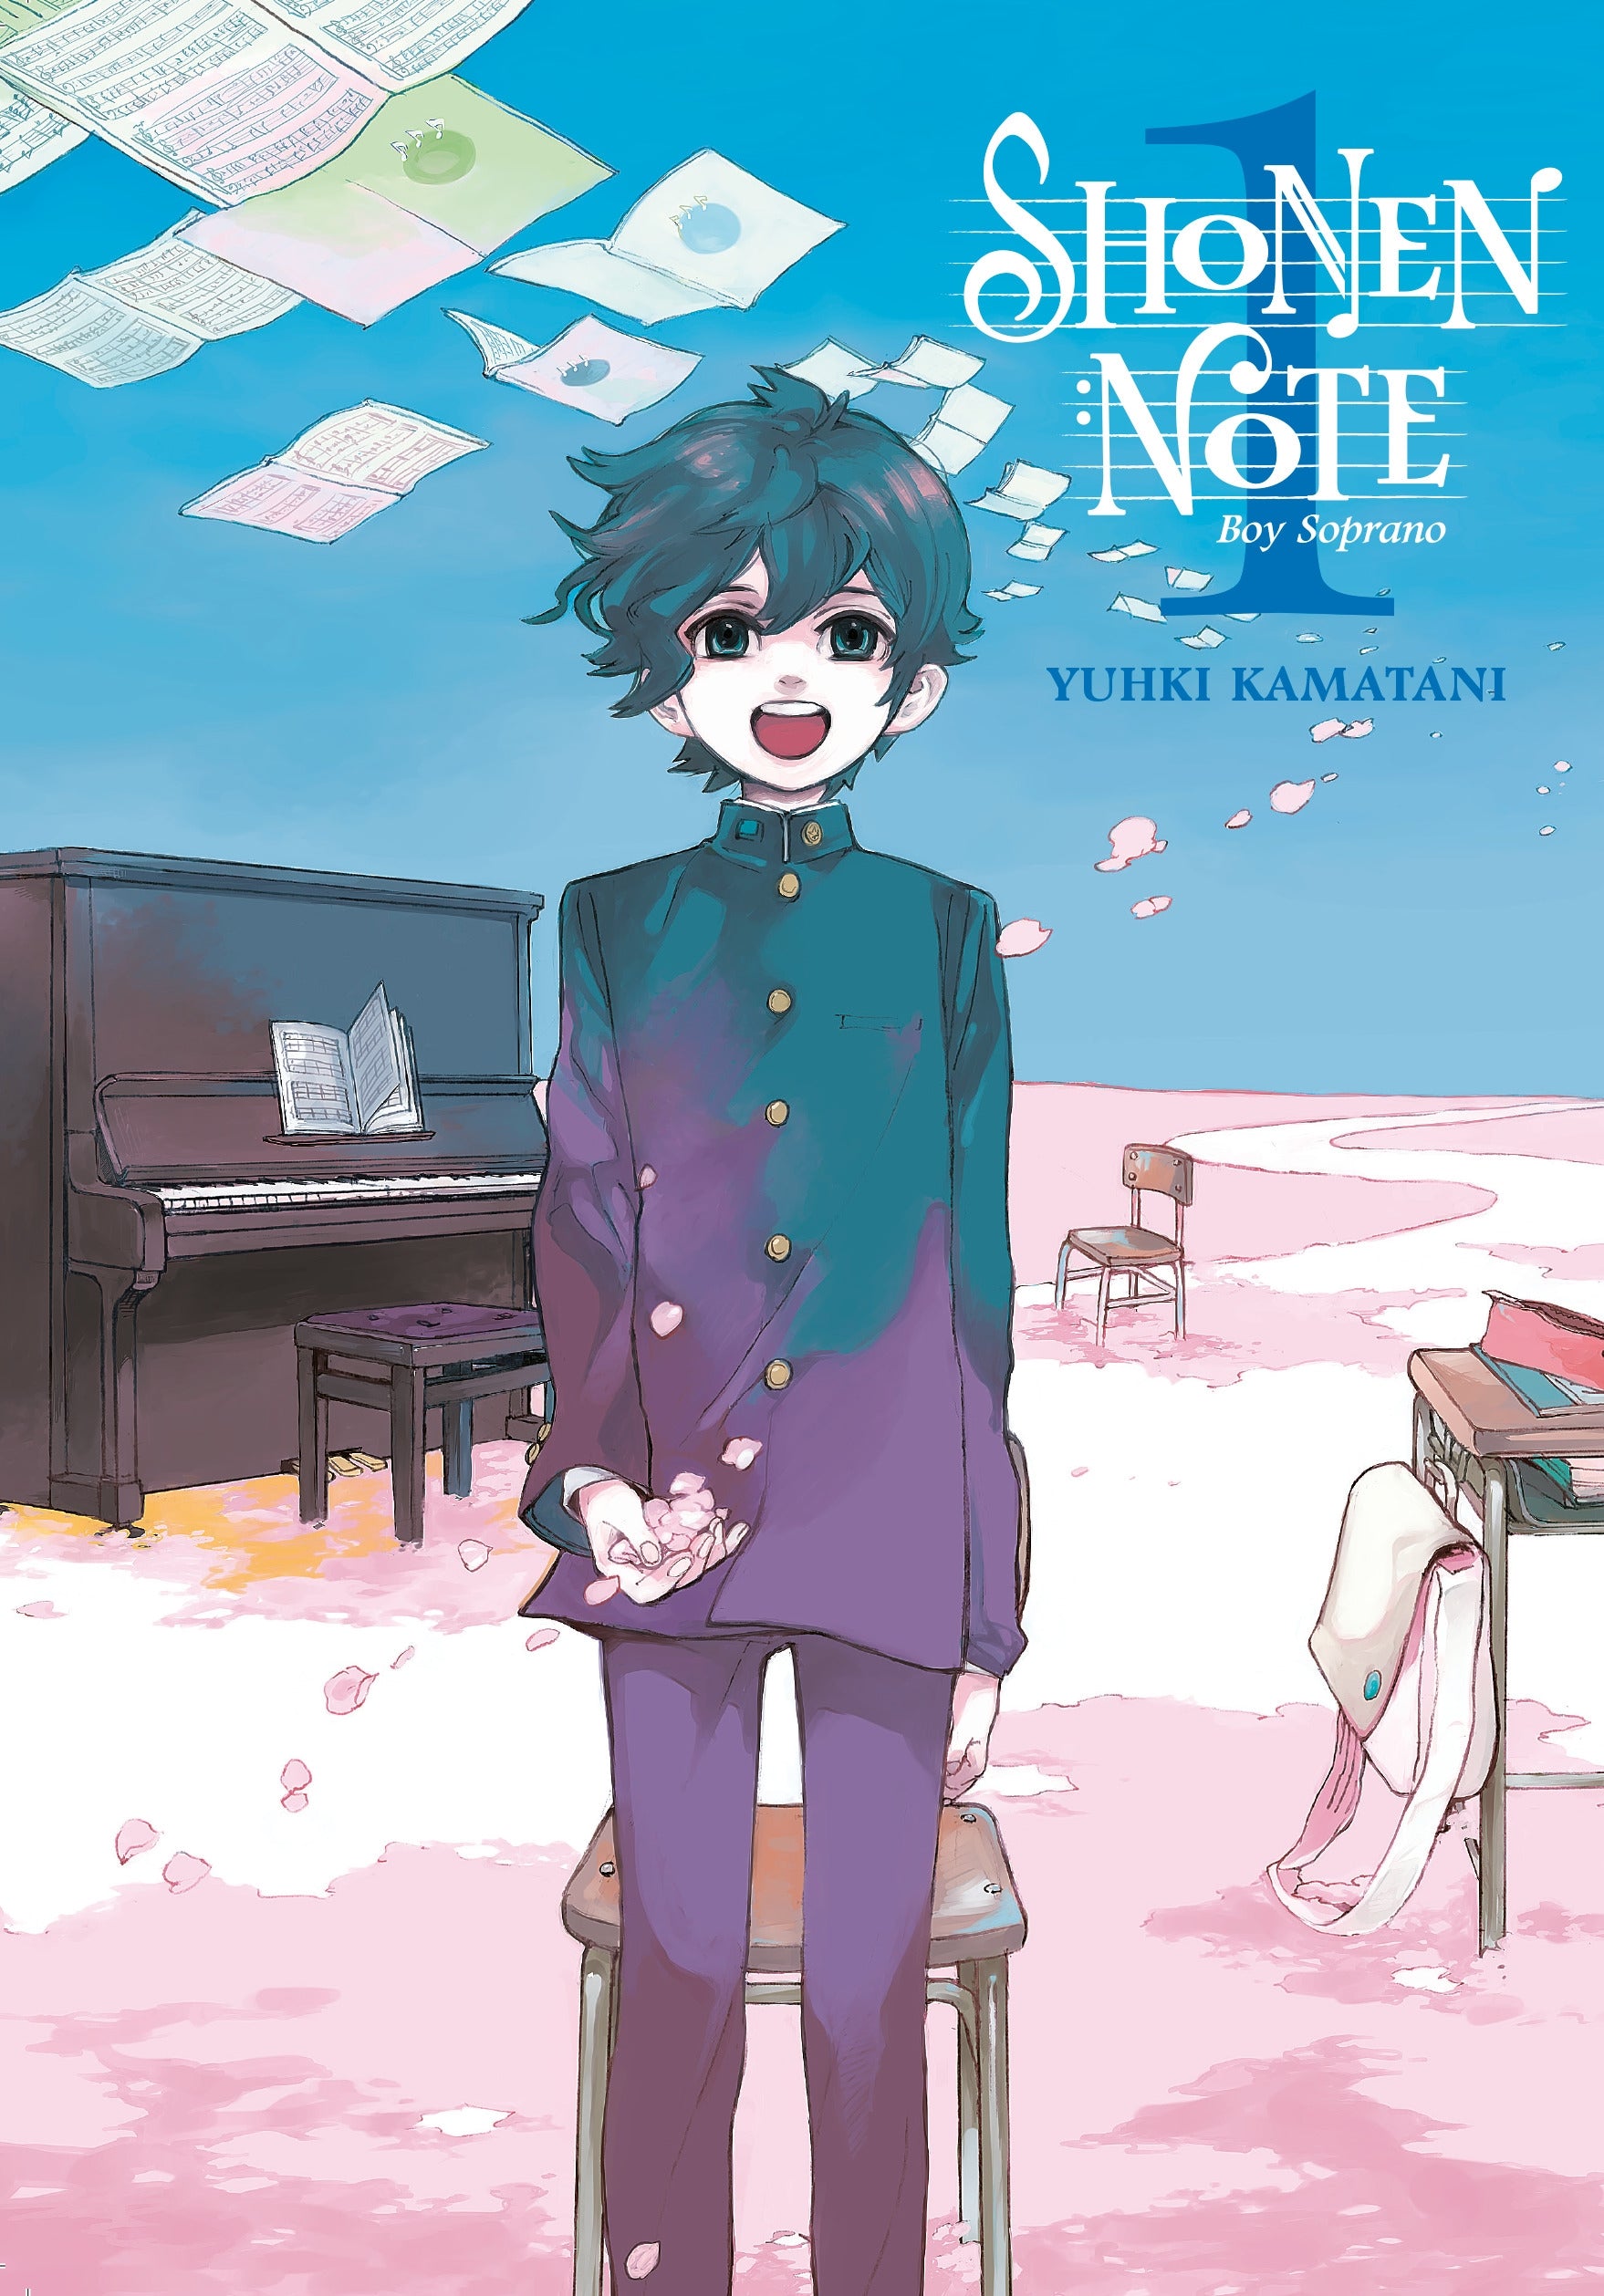 Shonen Note Boy Soprano, Vol. 1